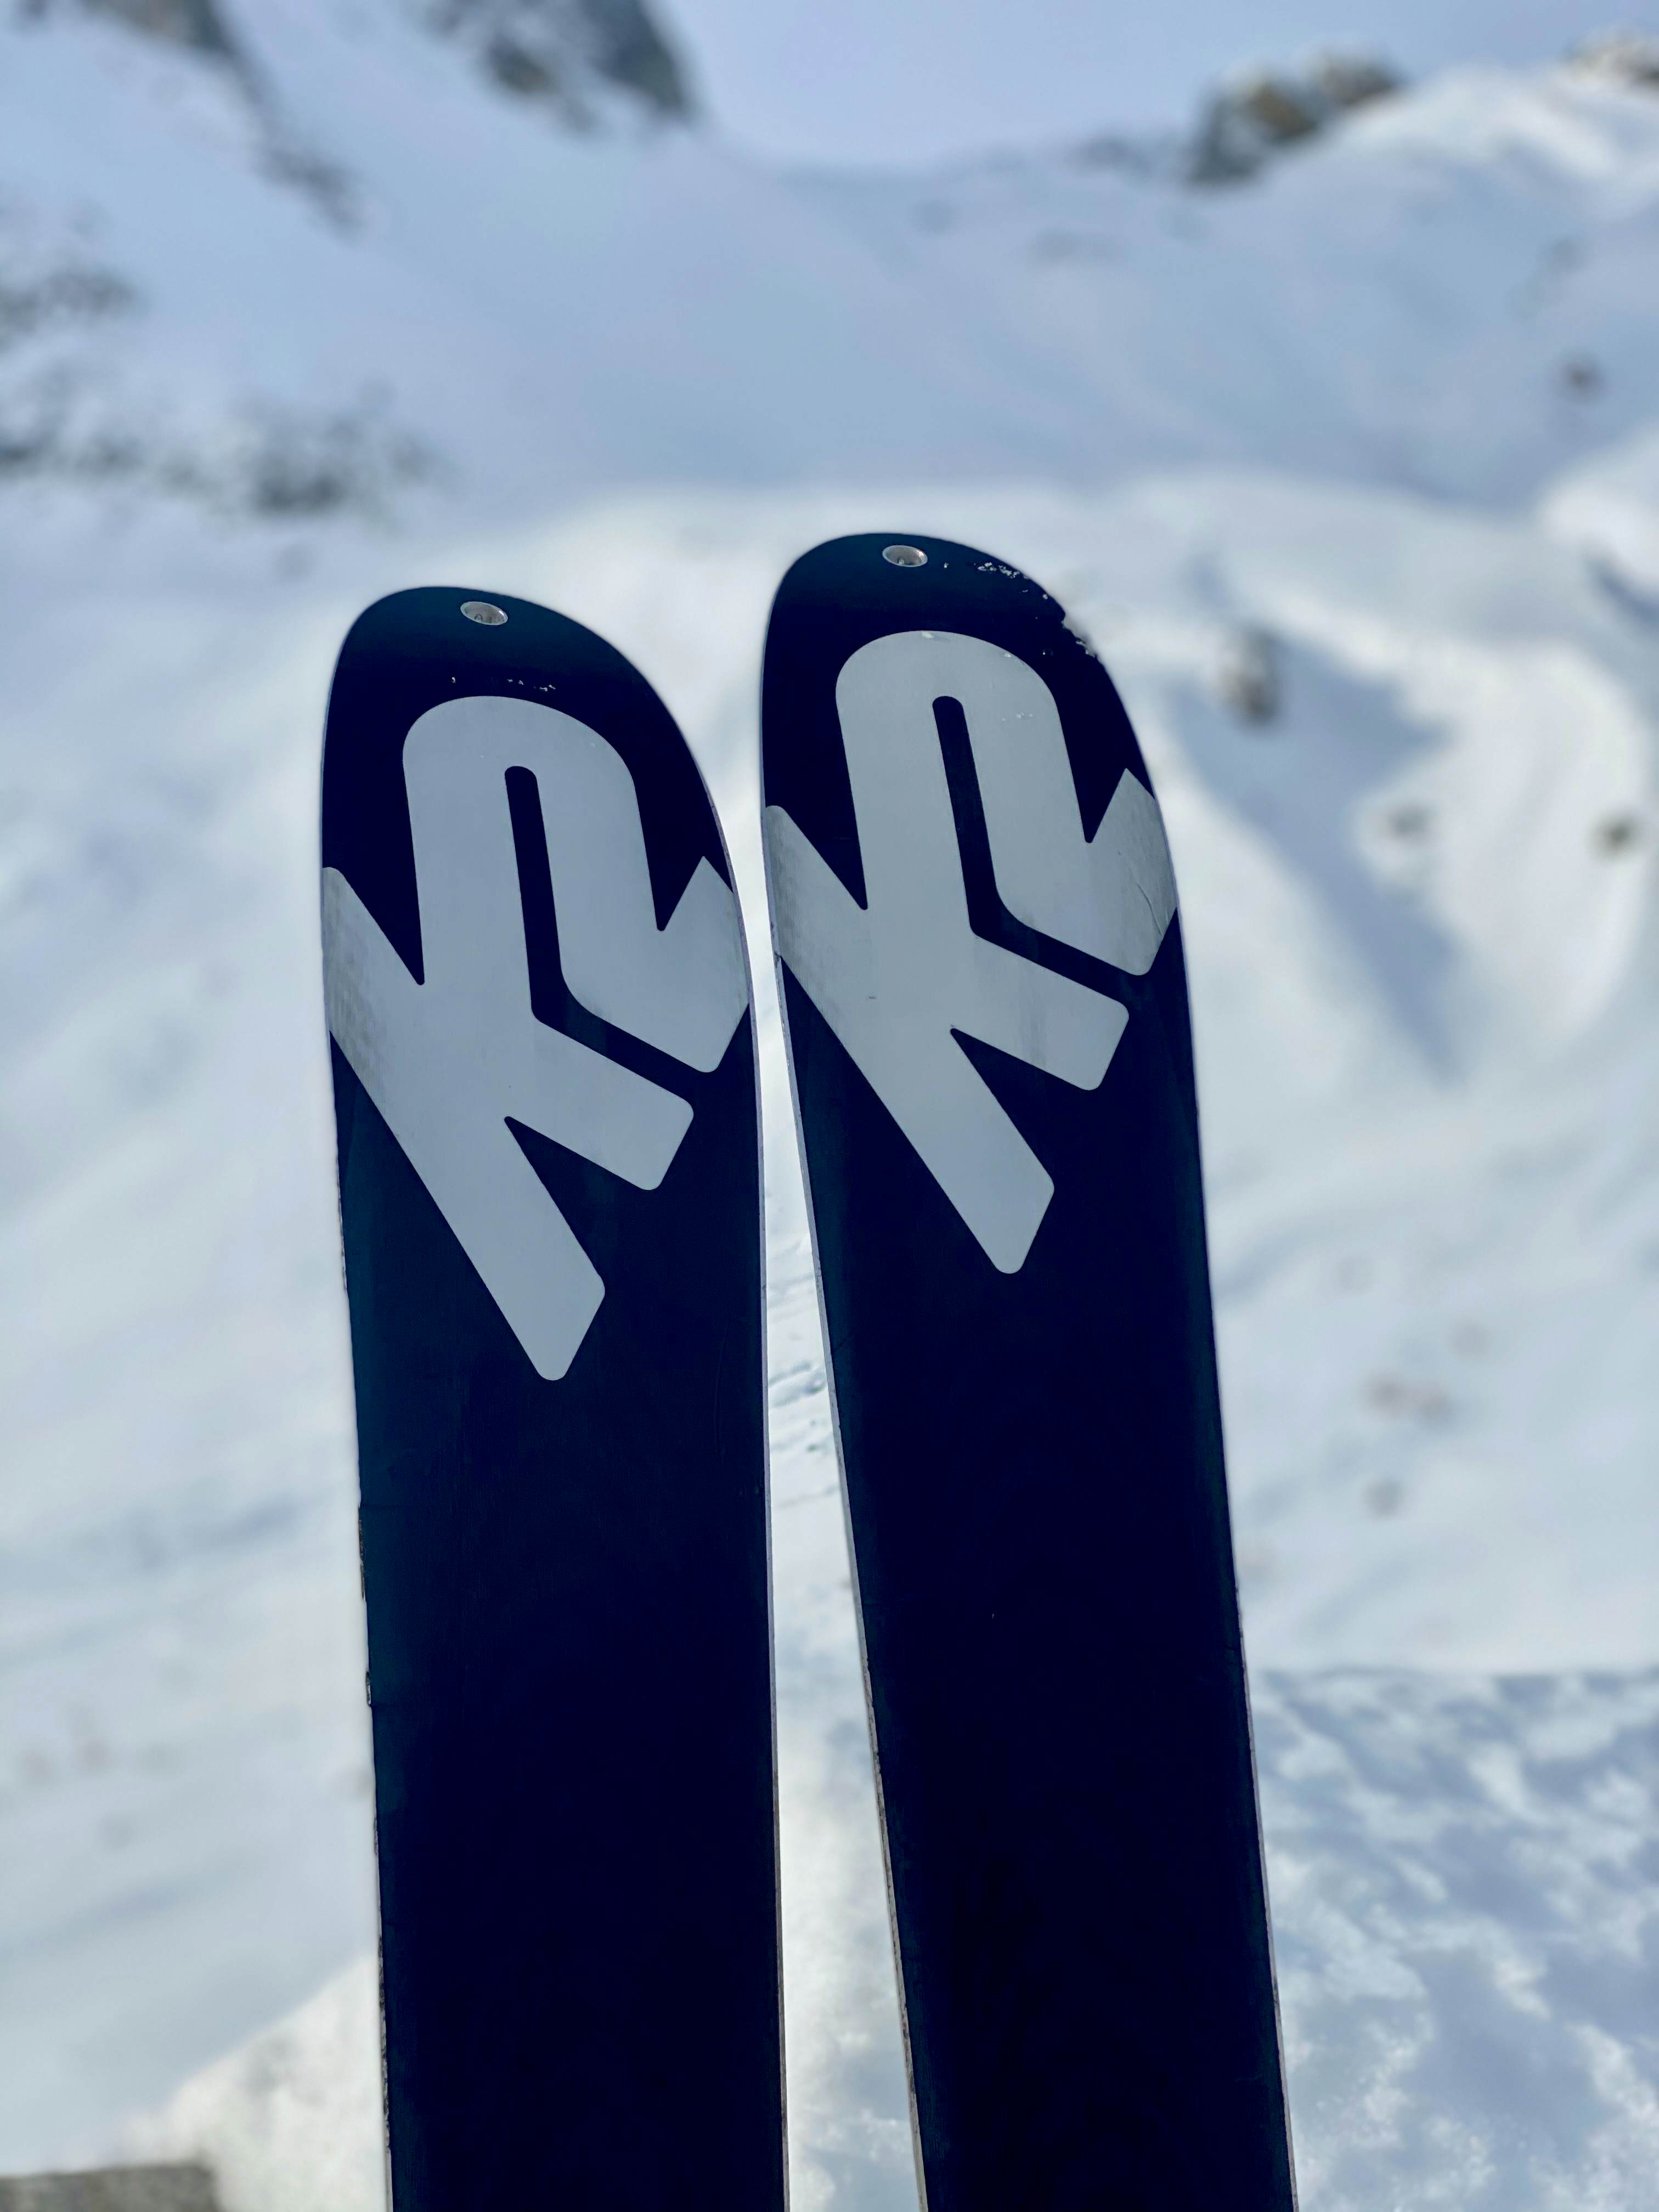 Die Skier stehen bereit für die Abfahrt